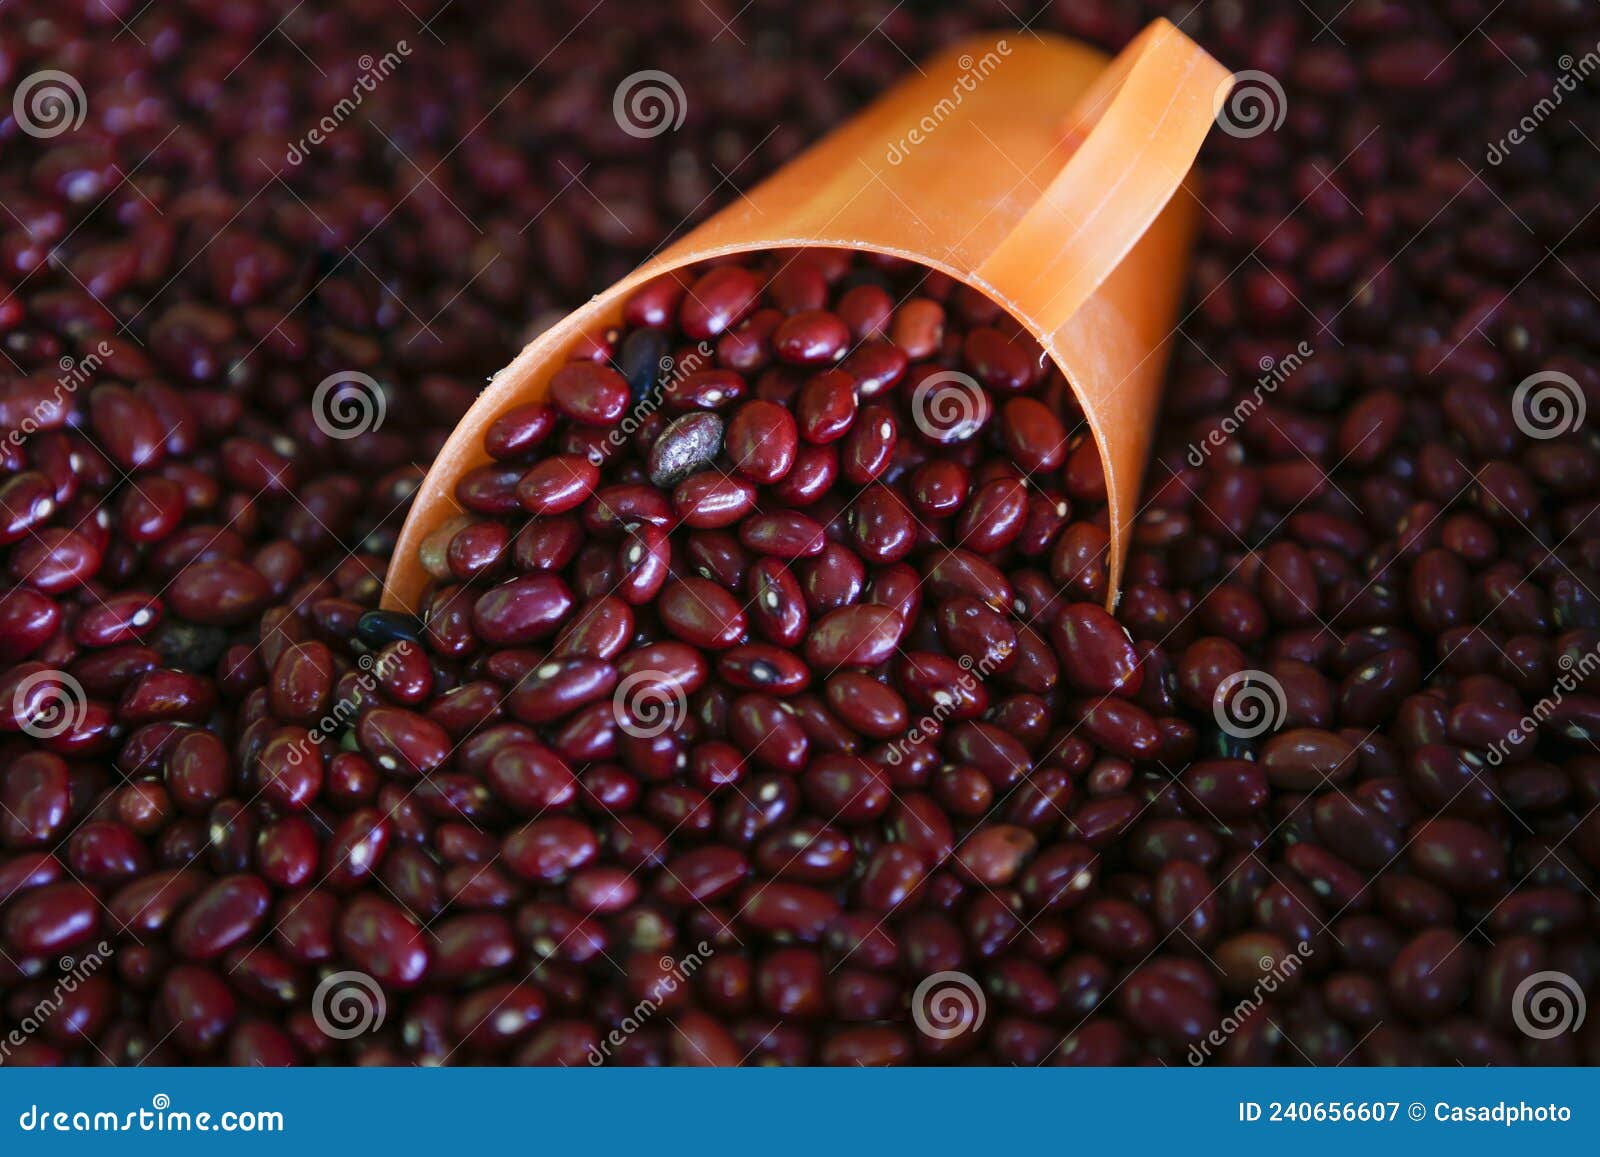 red beans, or feijao vermelho in portuguese, in bulk